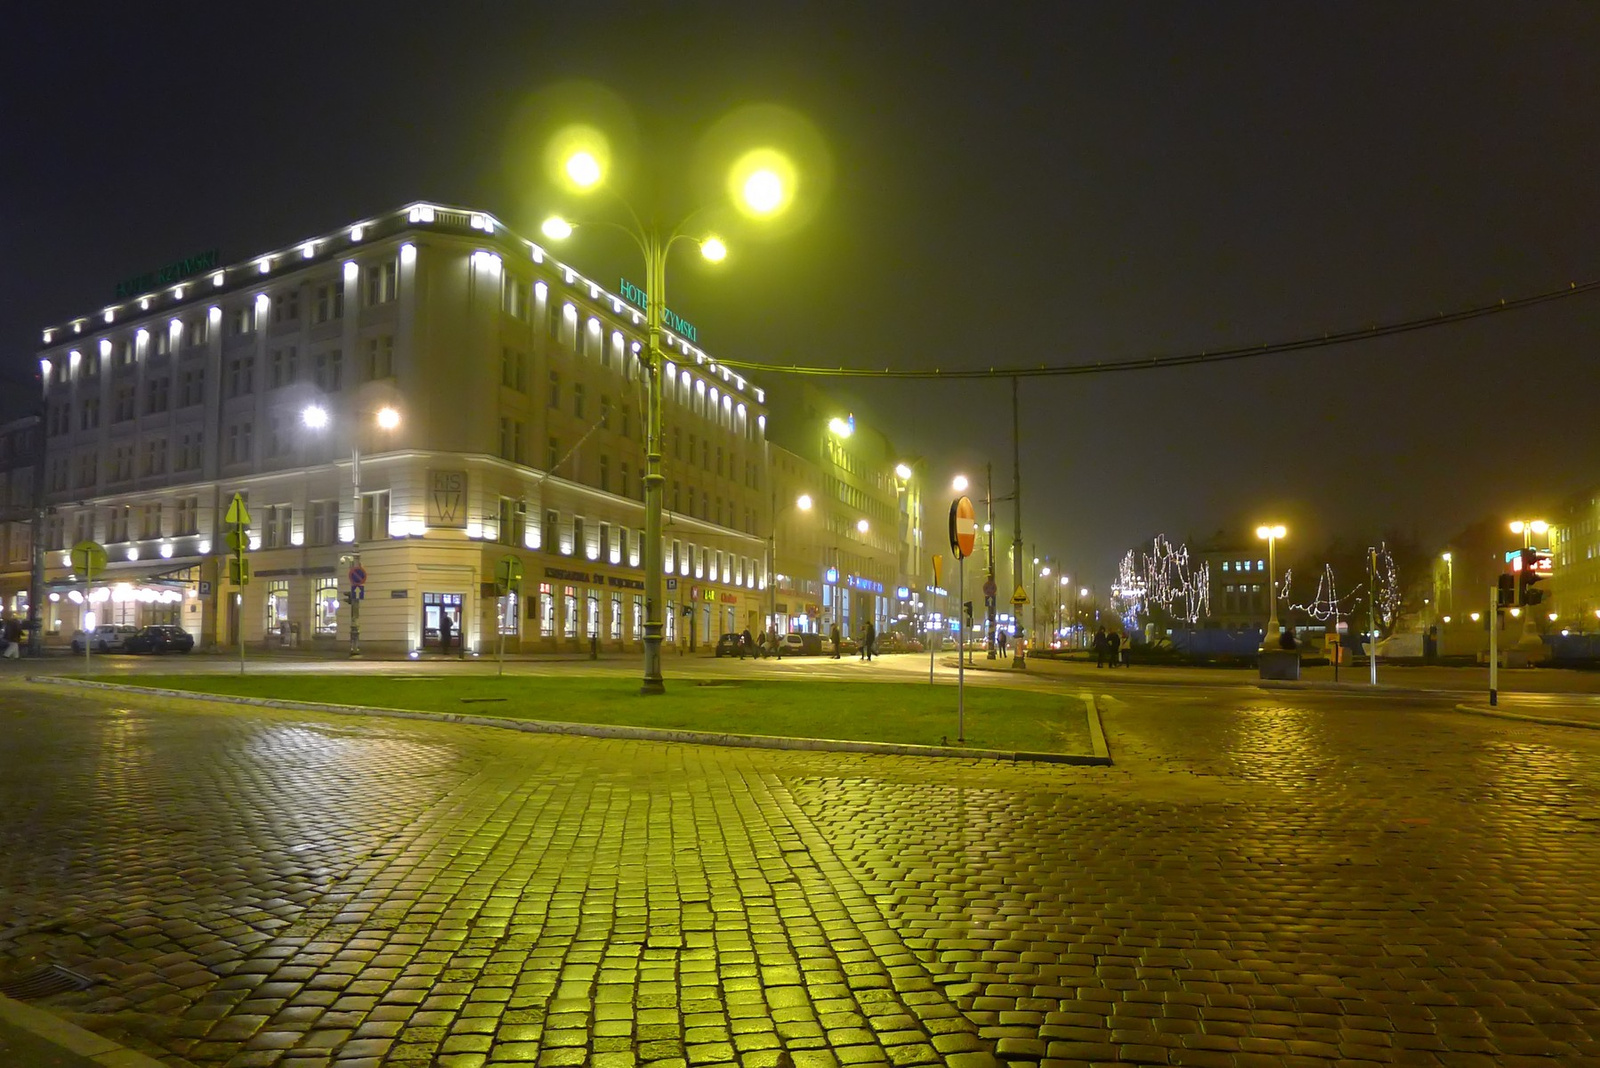 Plac Wolnosci, Poznan